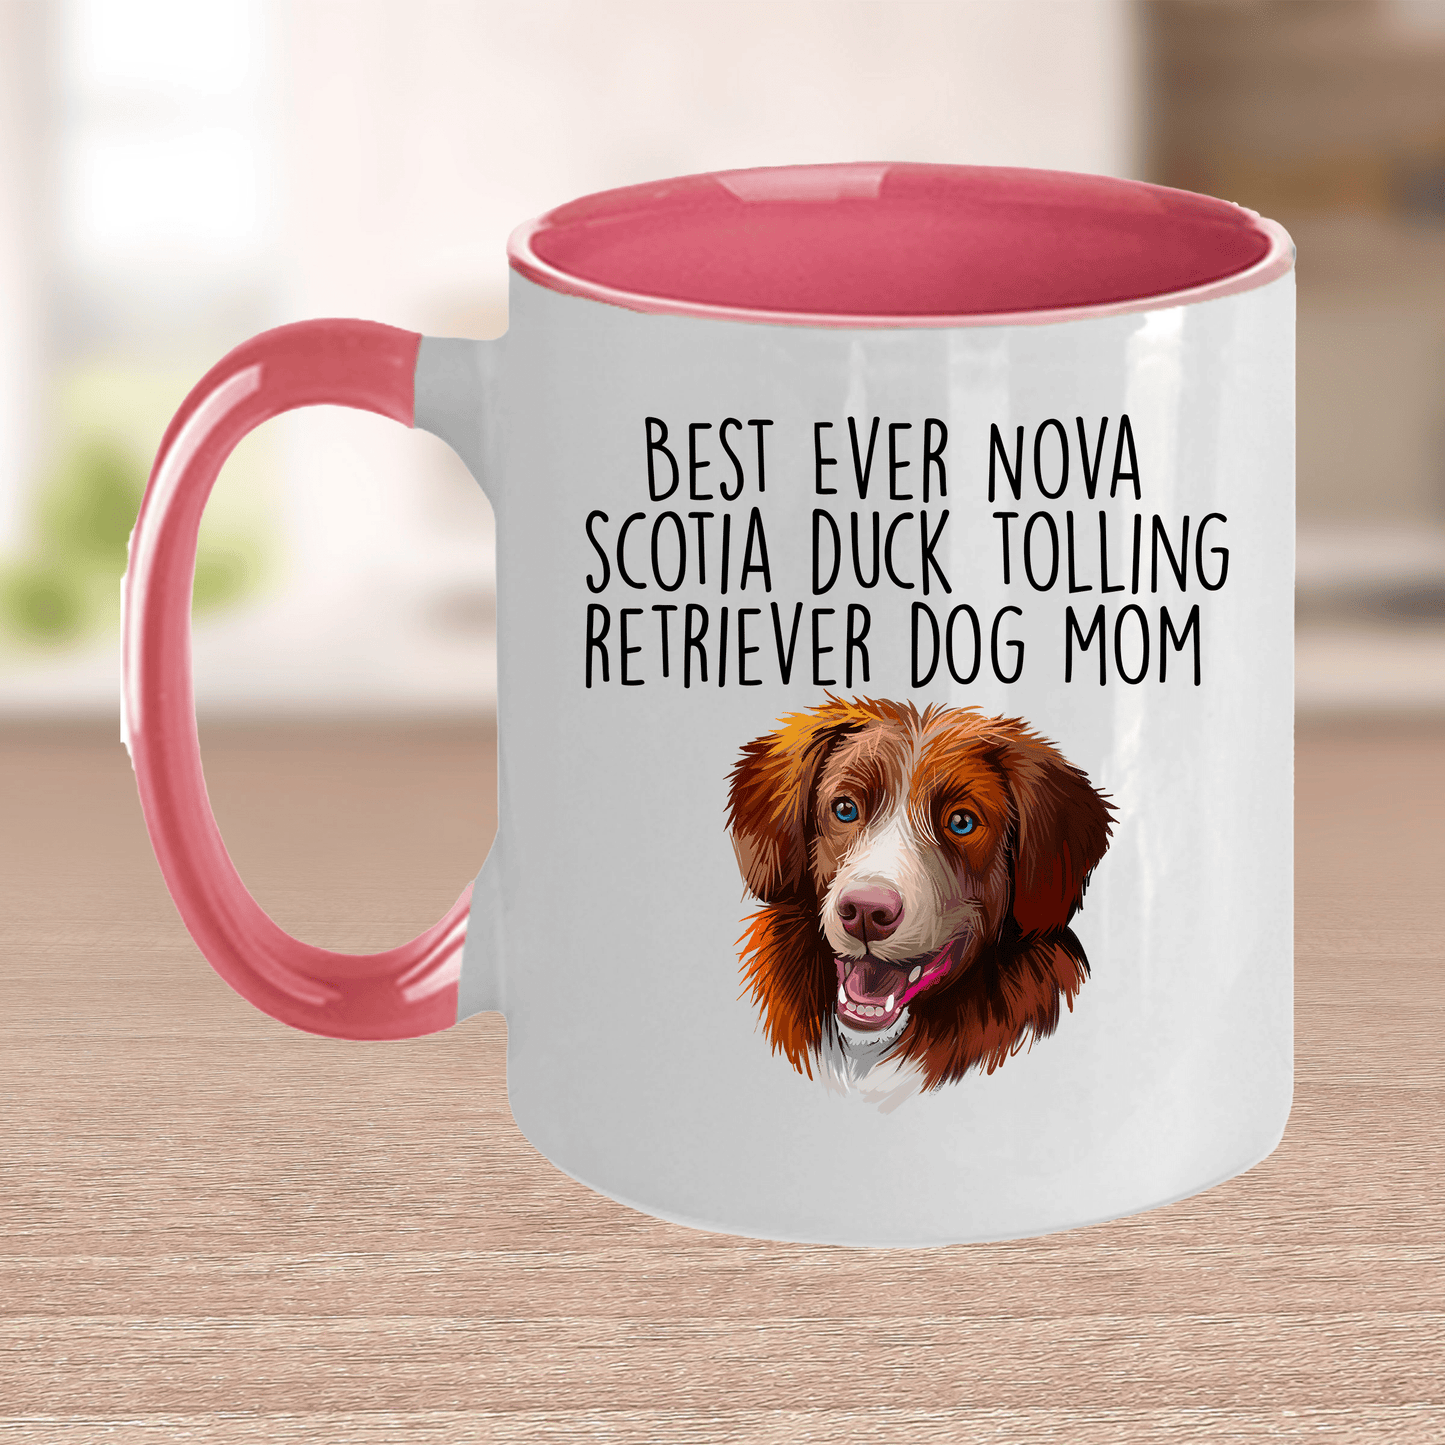 Best Ever Nova Scotia Duck Tolling Retriever Dog Mom Ceramic Coffee Mug